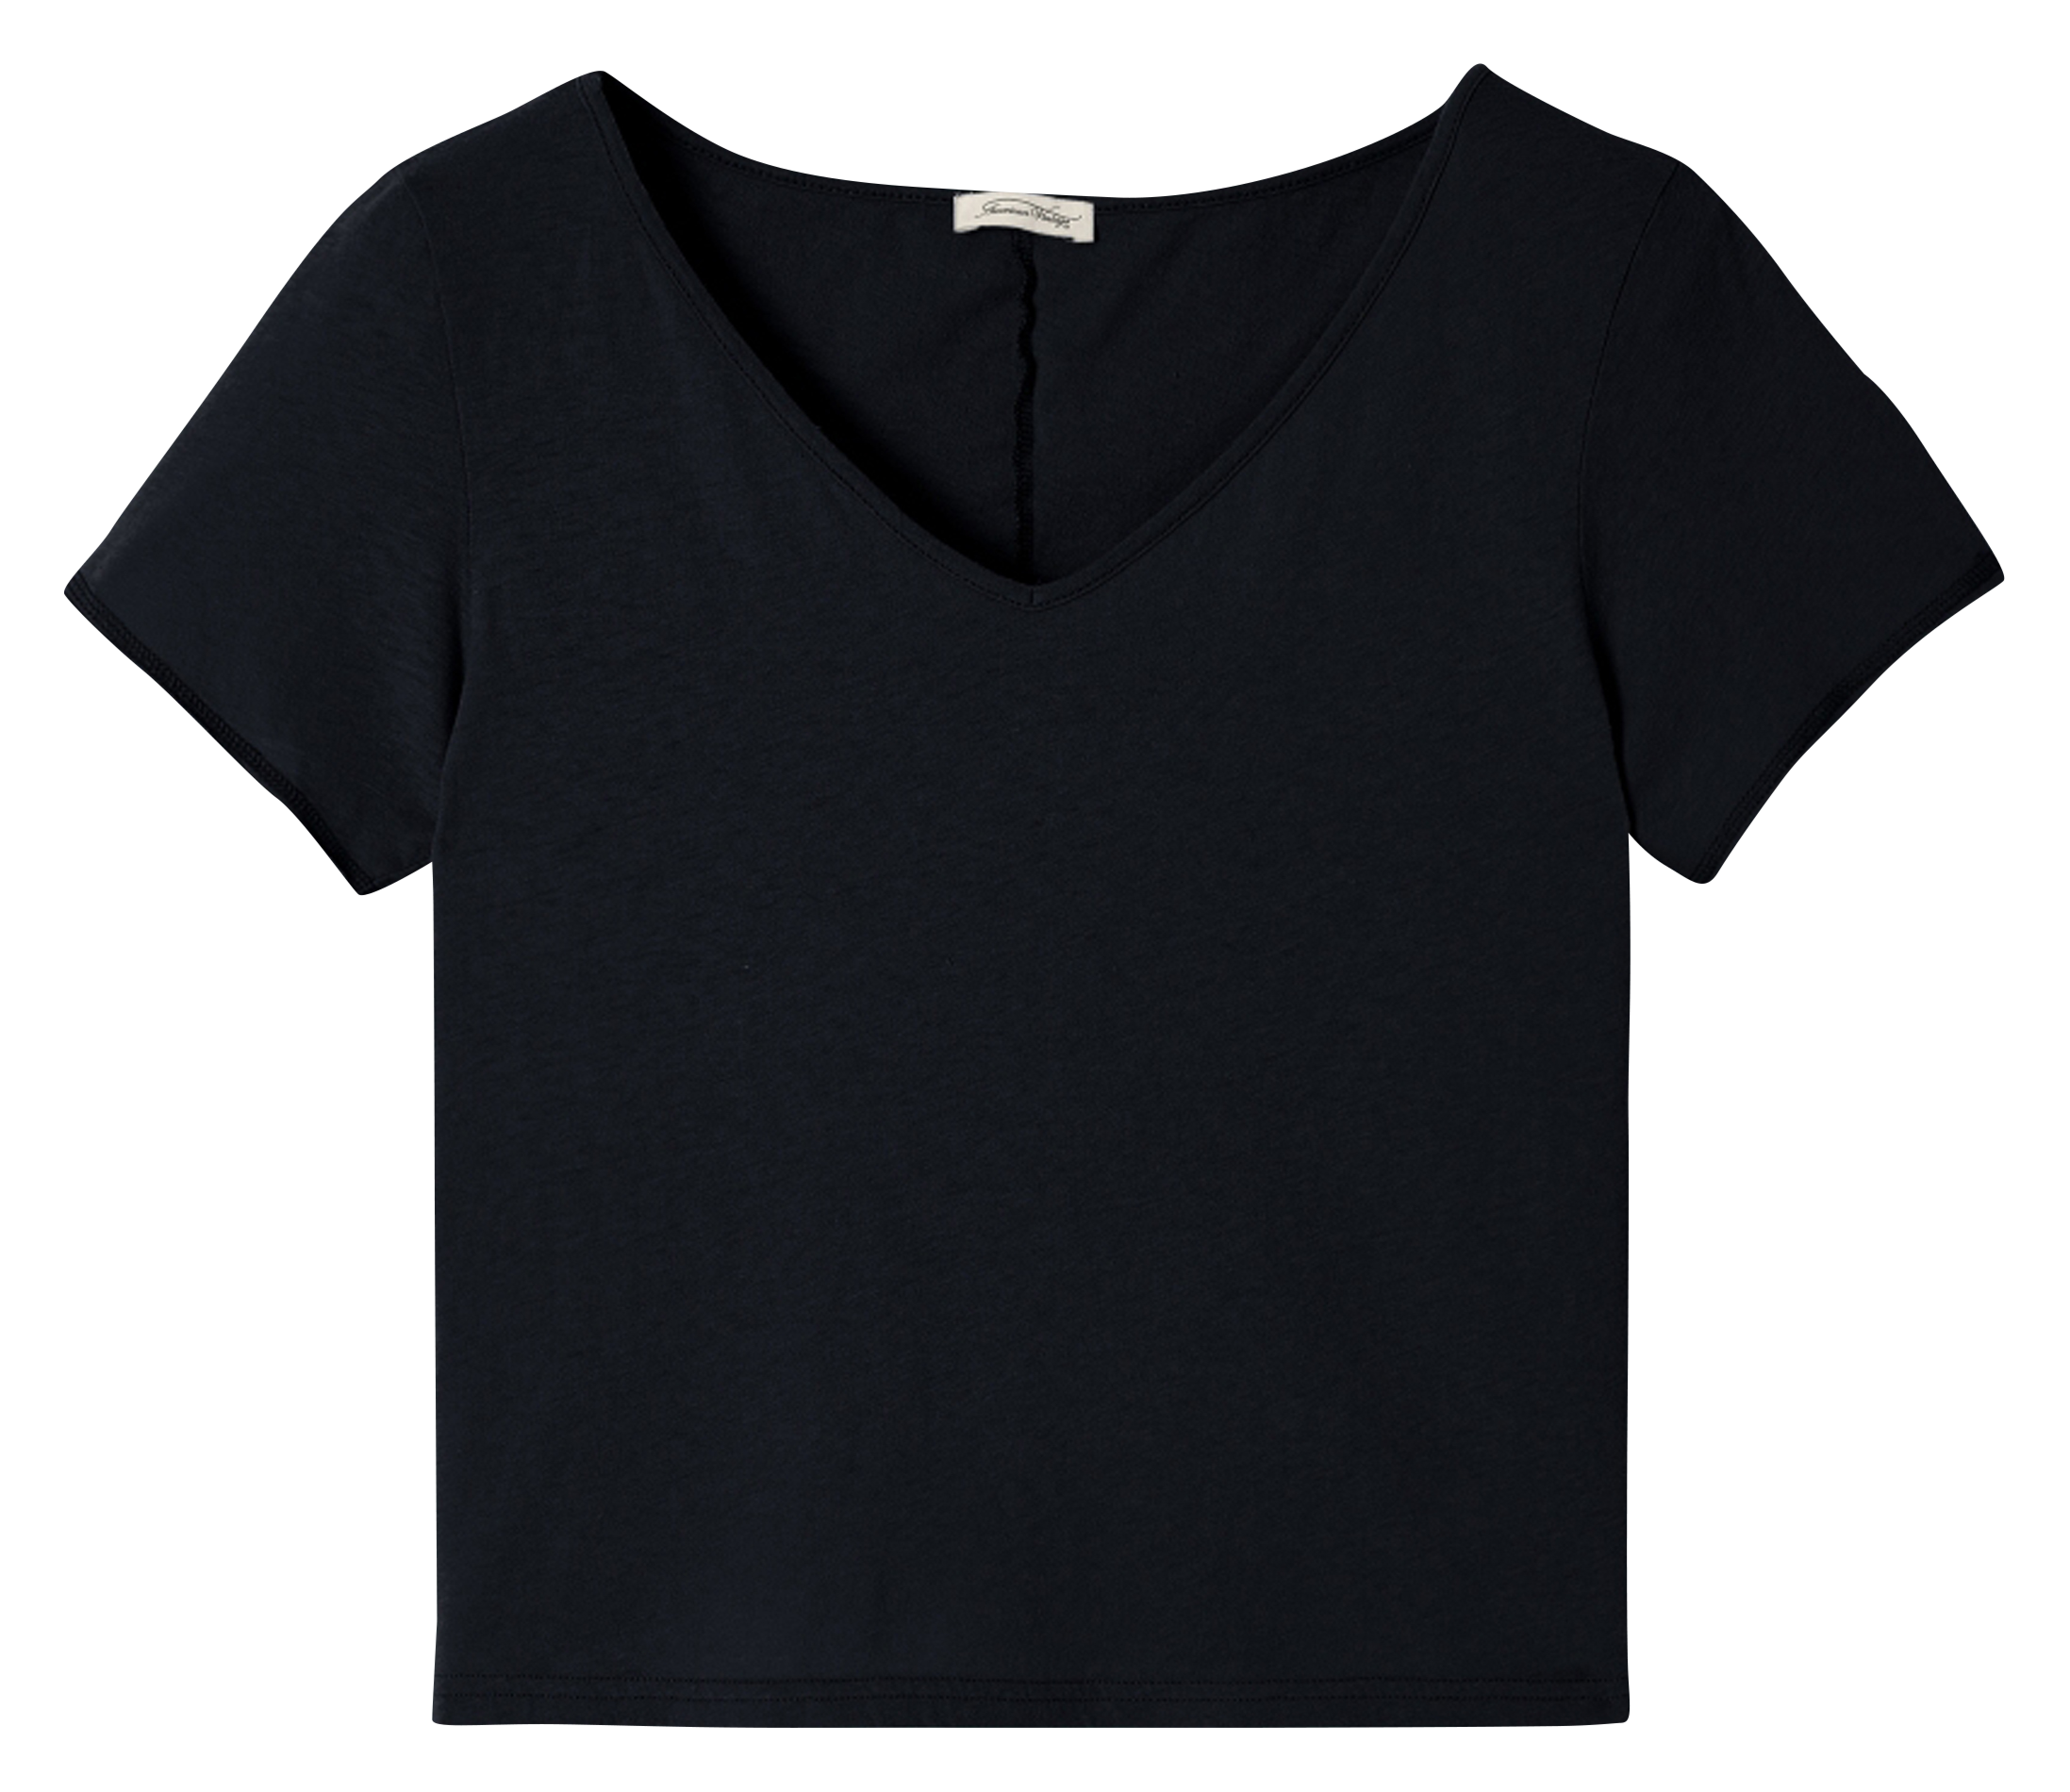 Botón Sonoma T Shirt Vintage Negro American Vintage de Algodón de color Negro Mujer Ropa de Camisetas y tops de Camisetas 